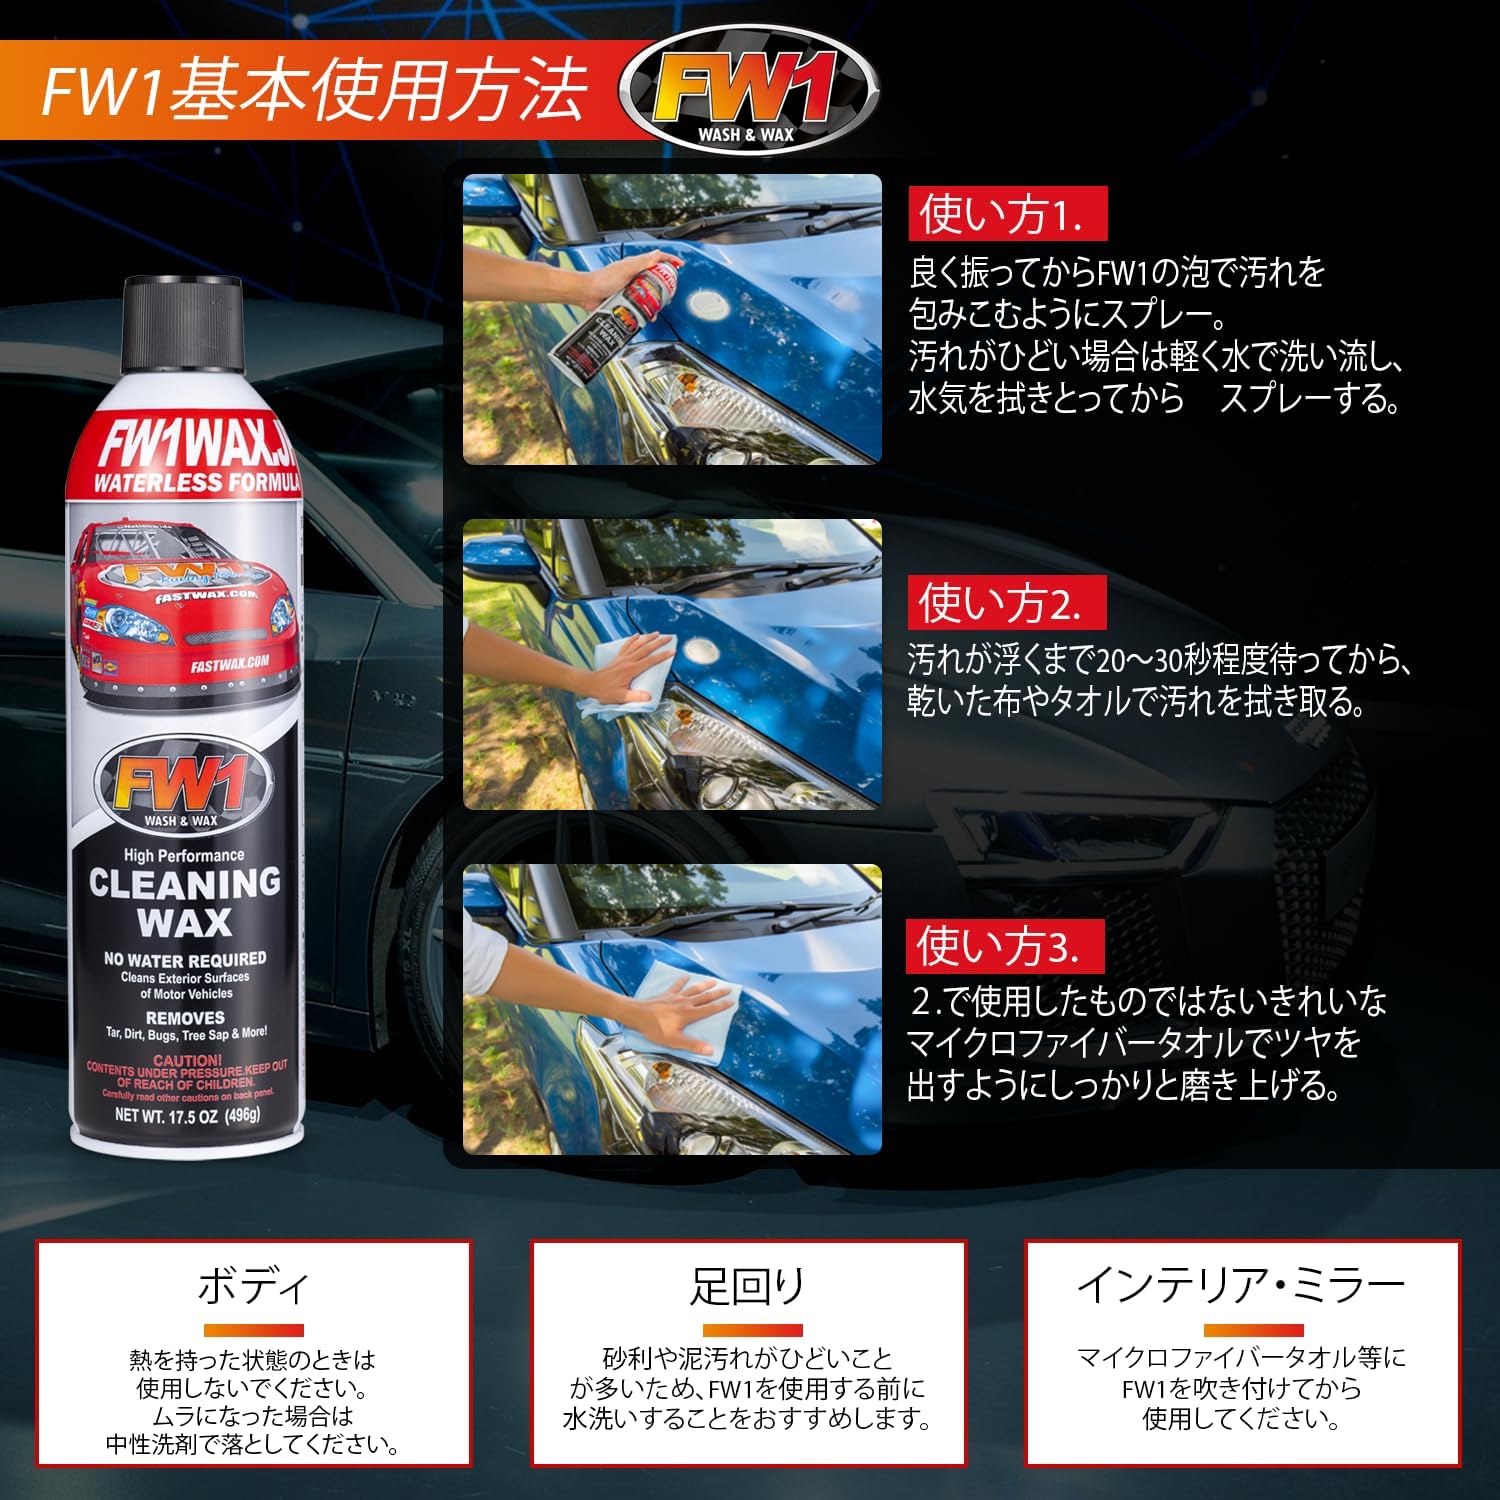 Image describing how to use FW1 car wax 